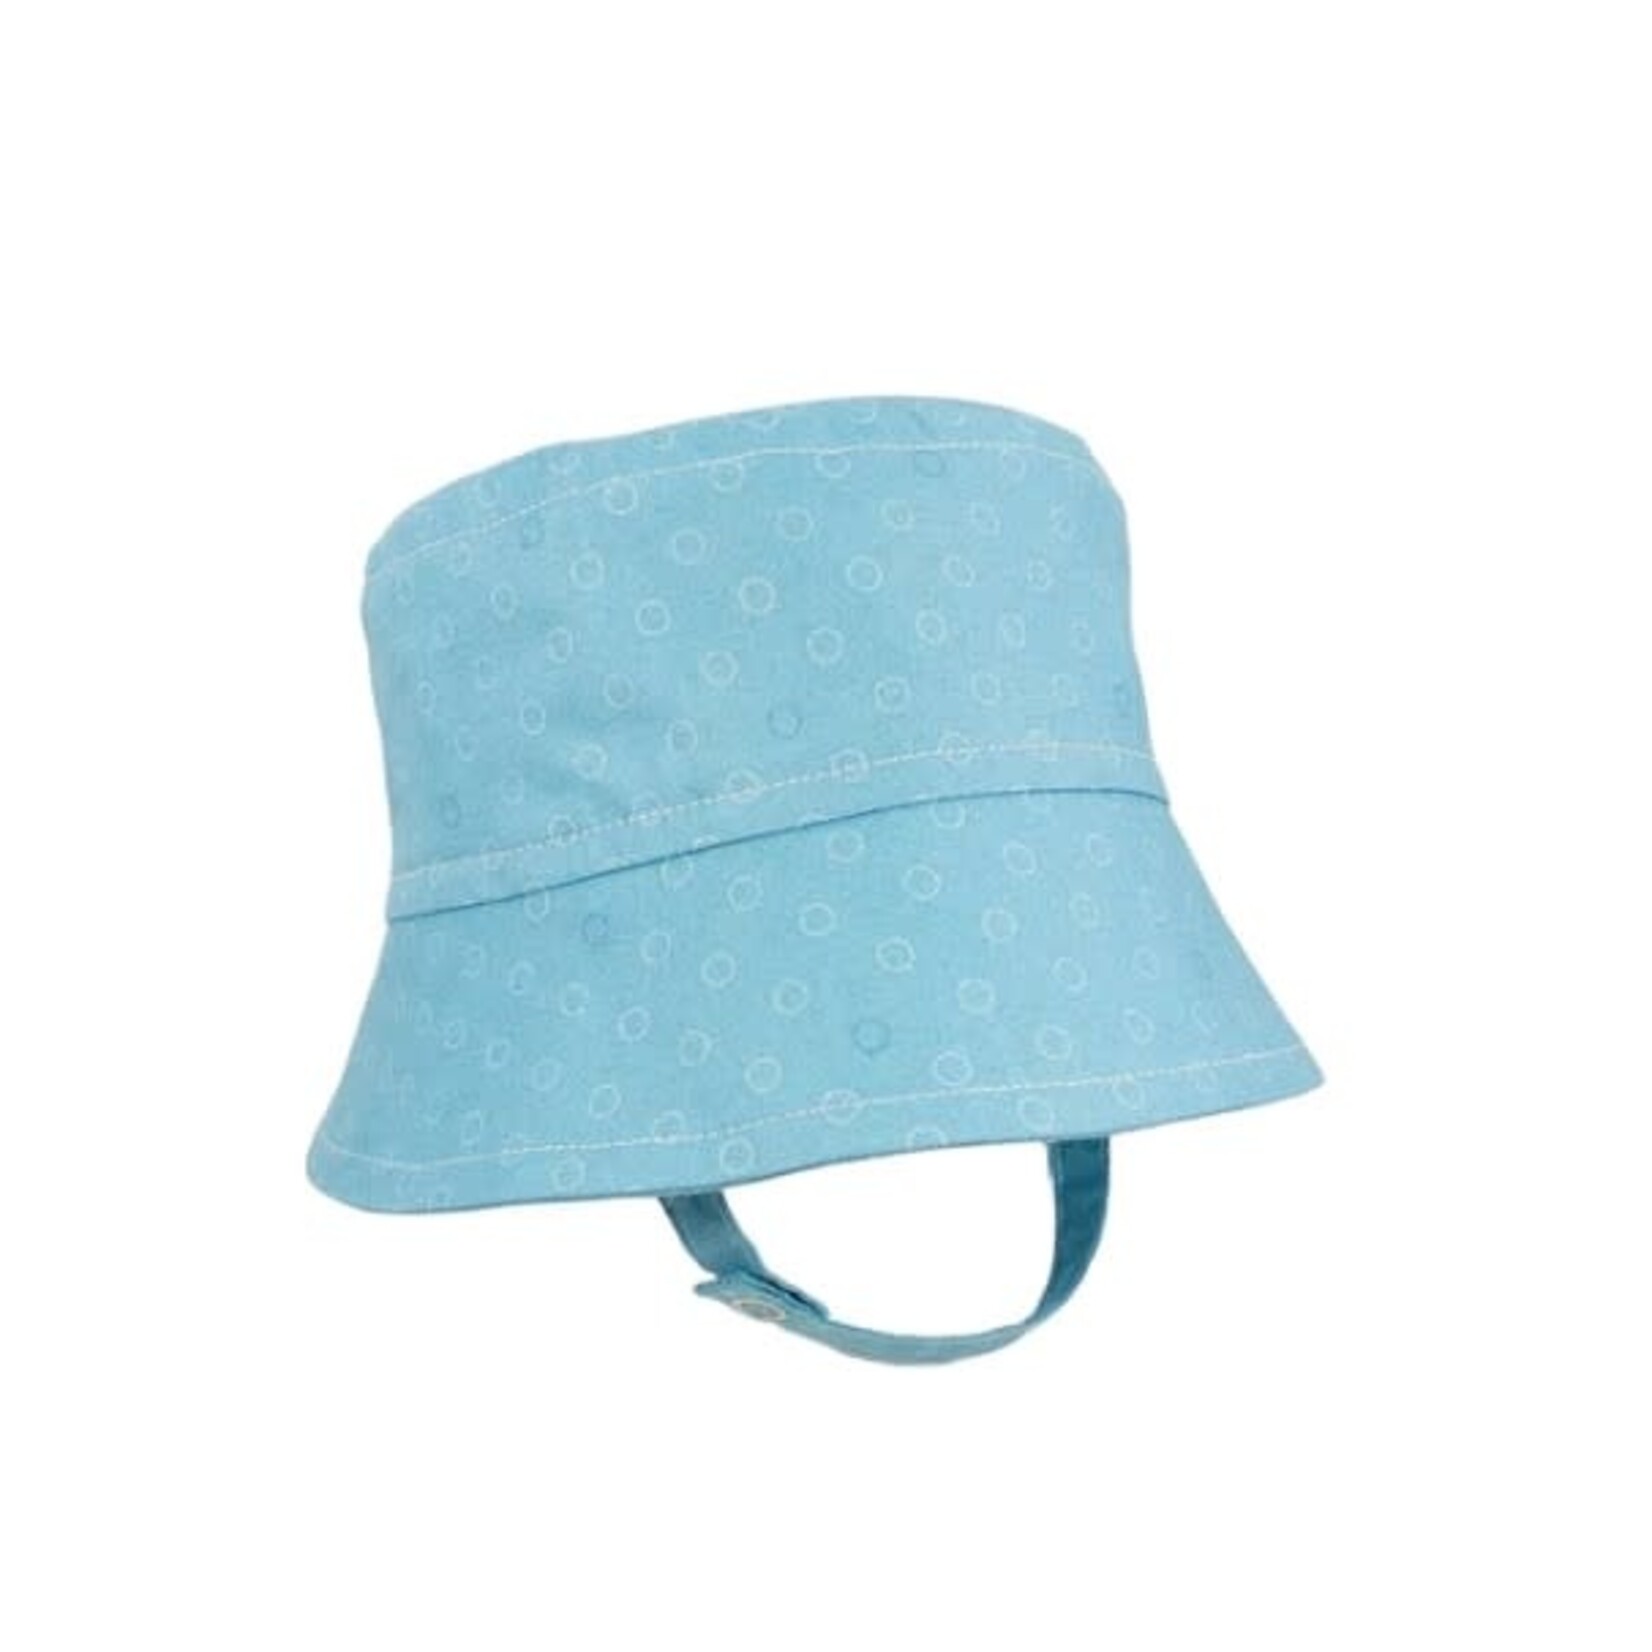 Tirigolo TIRIGOLO - Chapeau d'été classique ajustable en coton - Turquoise avec cercles